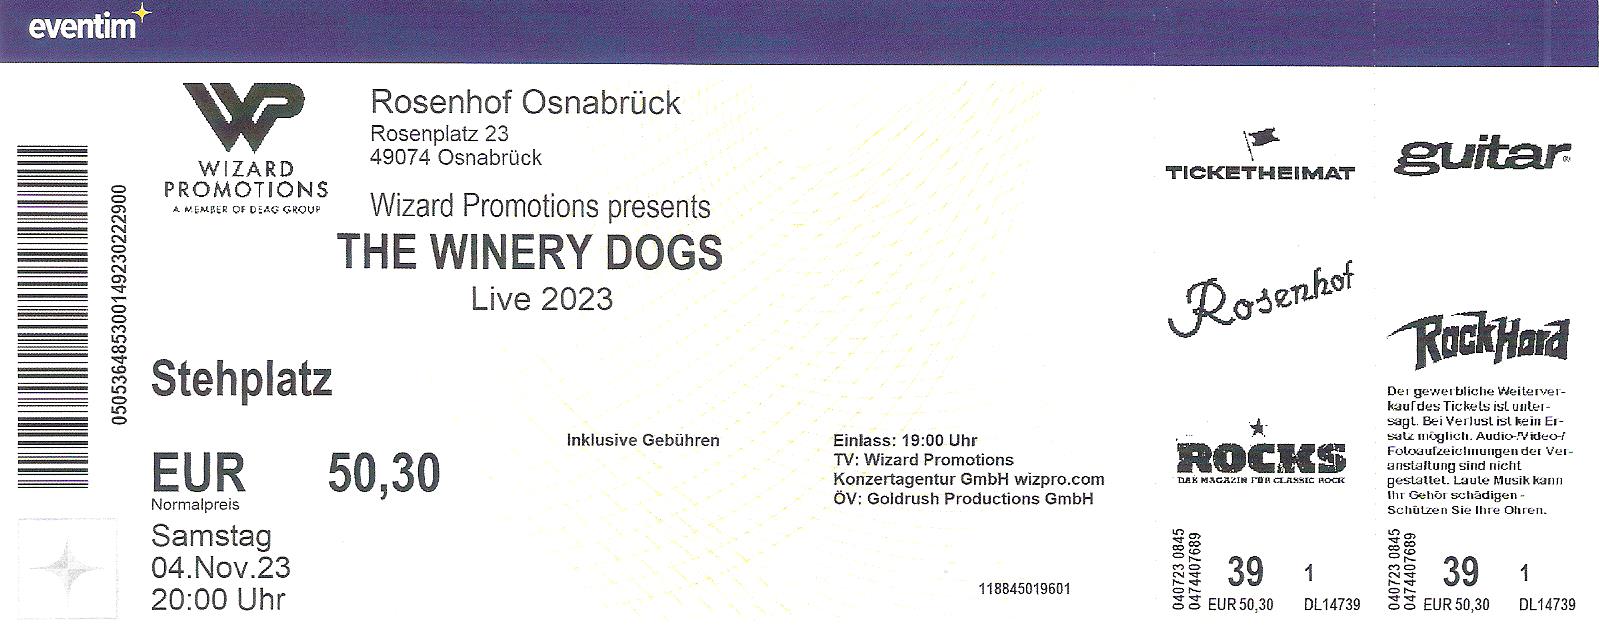 Winery DogsTicket 2023 Rosenhof